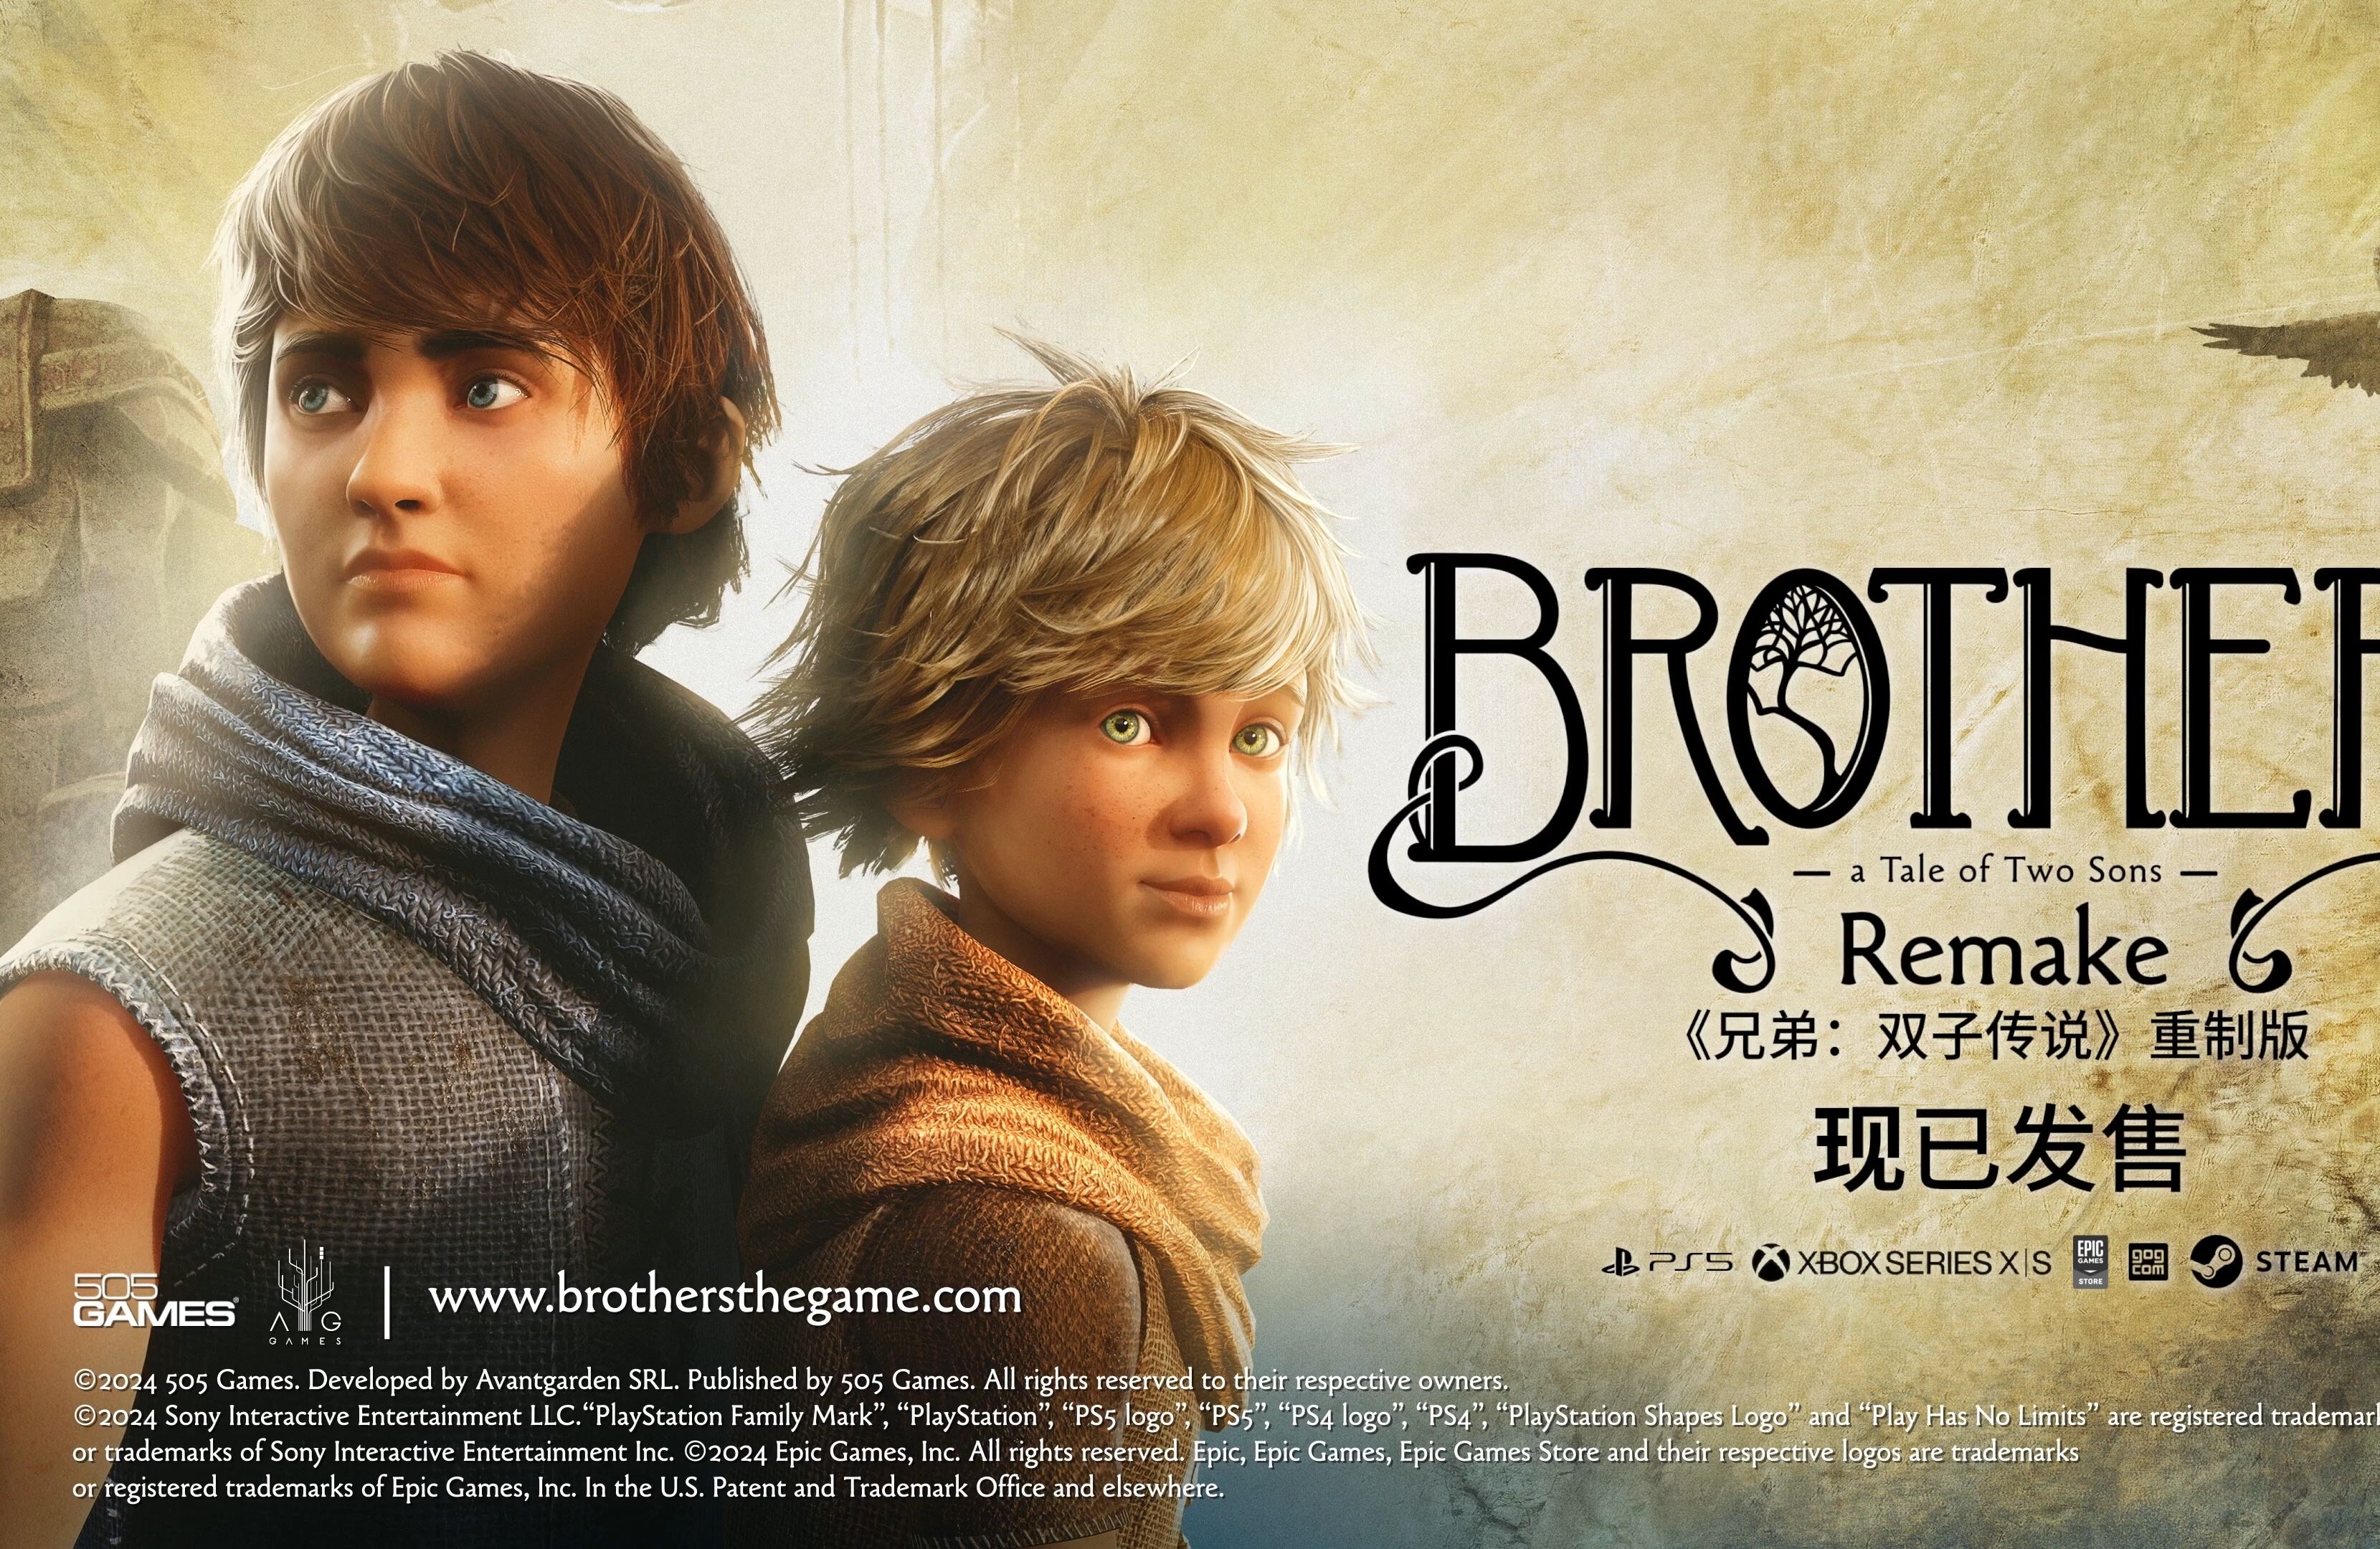 《兄弟:双子传说 986996 brothers:a tale of two sons》重制版